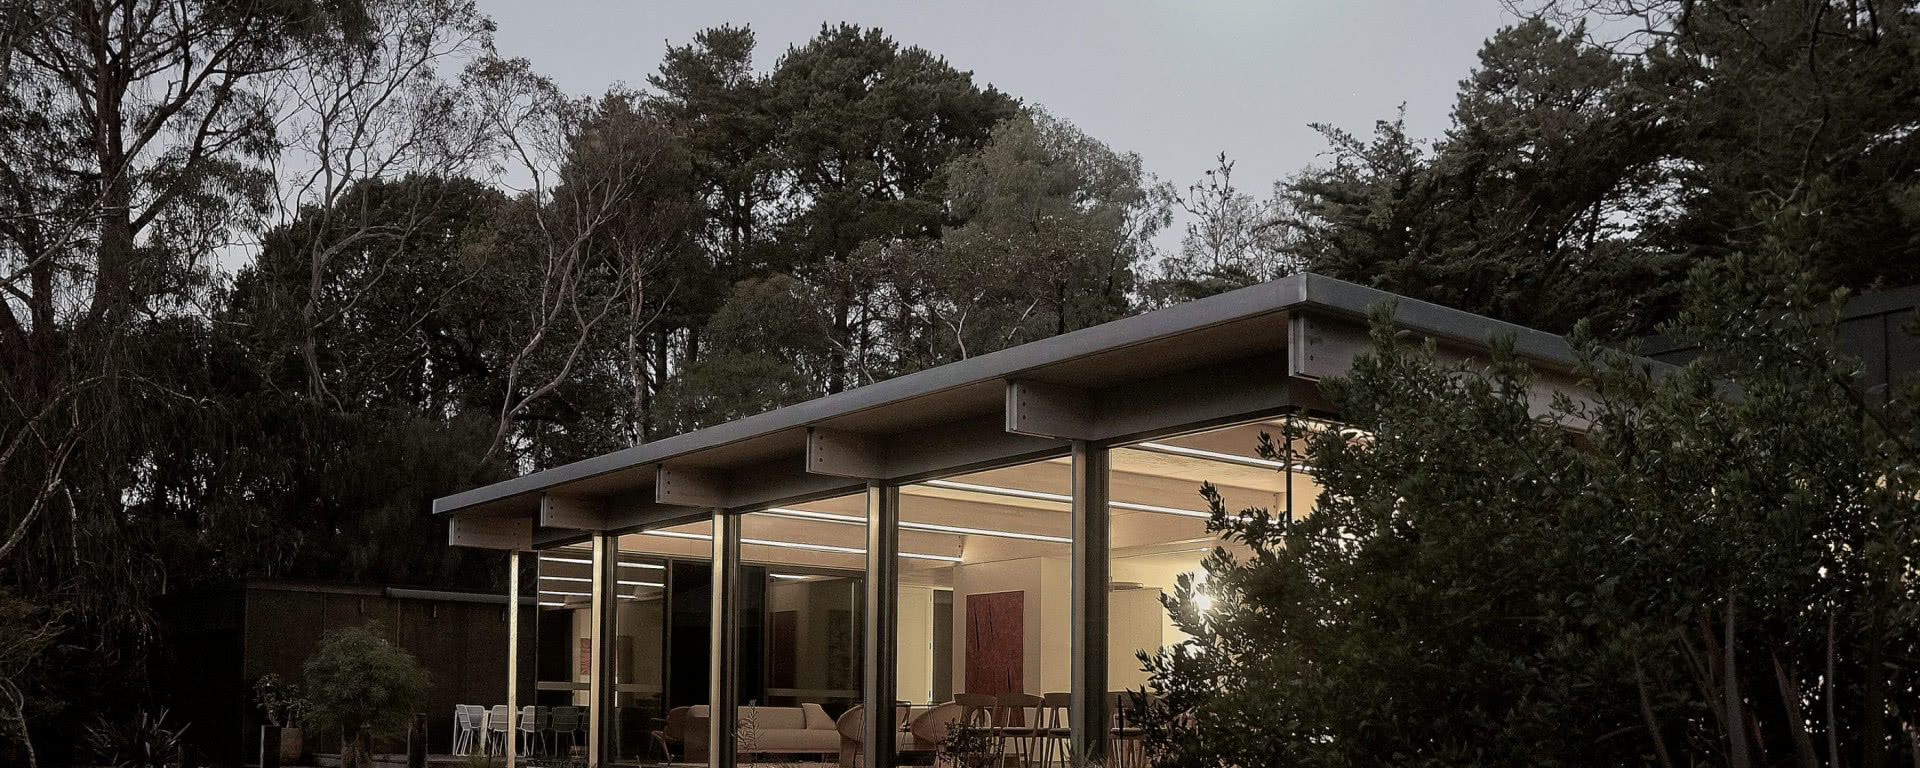 Ten dom przypomina pawilon ze szkła! Powstał w Australii w duchu modernizmu